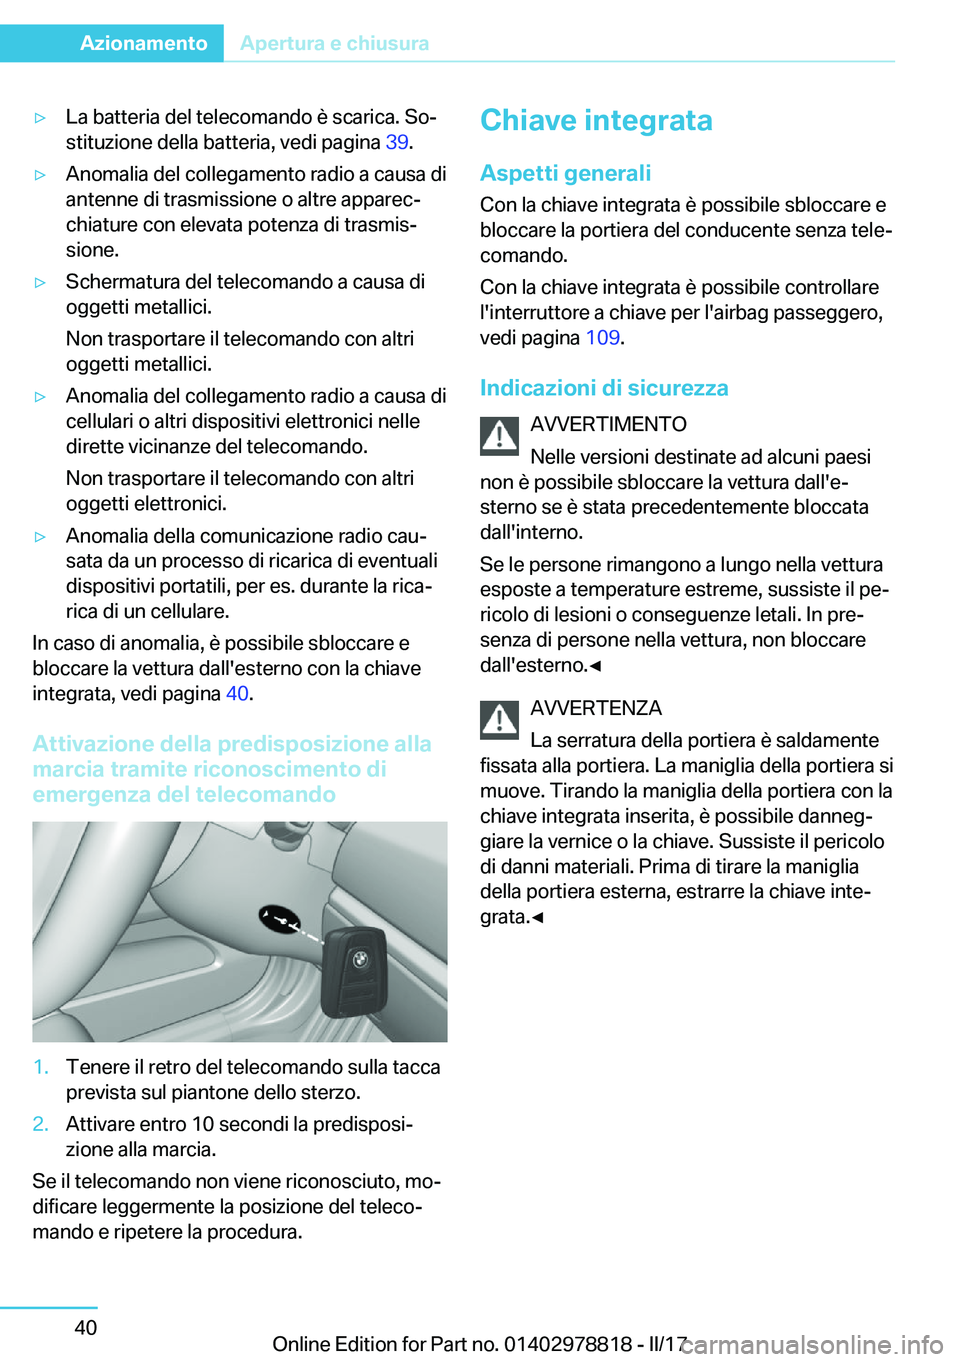 BMW I3 2017  Libretti Di Uso E manutenzione (in Italian) 'y�L�a� �b�a�t�t�e�r�i�a� �d�e�l� �t�e�l�e�c�o�m�a�n�d�o� �è� �s�c�a�r�i�c�a�.� �S�oª�s�t�i�t�u�z�i�o�n�e� �d�e�l�l�a� �b�a�t�t�e�r�i�a�,� �v�e�d�i� �p�a�g�i�n�a�  �3�9�.'y�A�n�o�m�a�l�i�a�